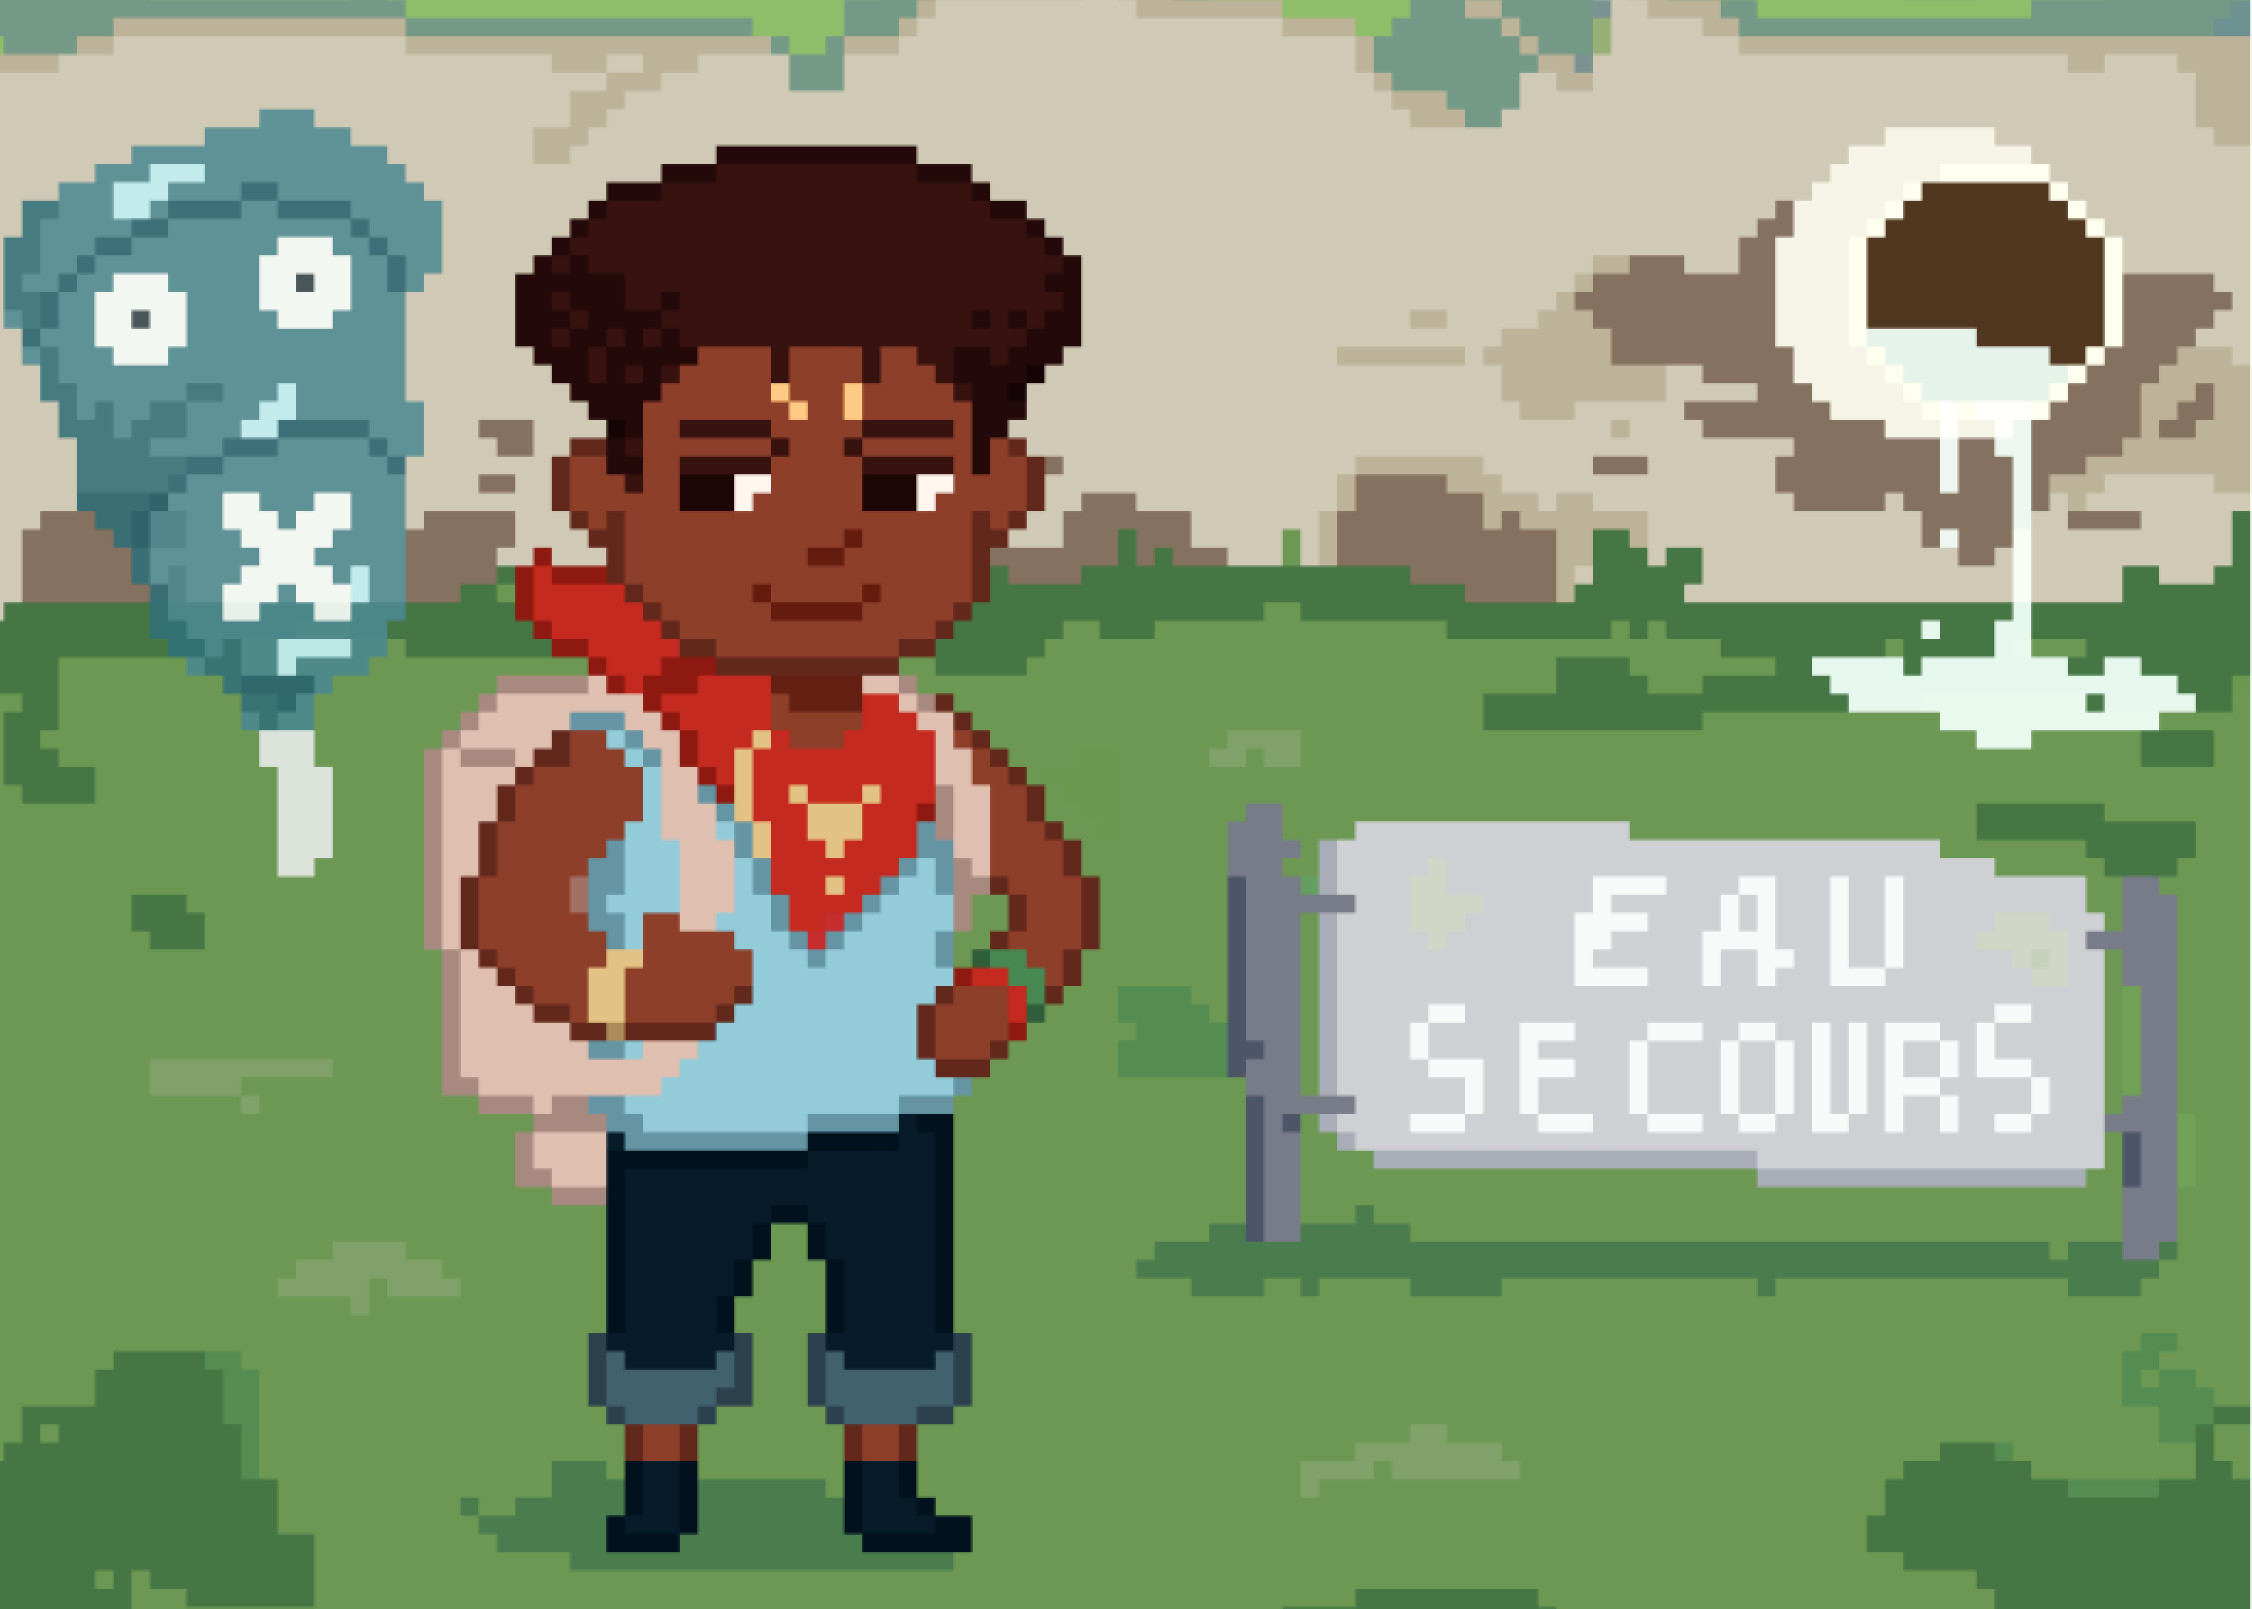 Avez-vous déjà entendu parler d’Eau secours, un jeu vidéo qui met l’accent sur les problèmes de l’eau en Guadeloupe ?